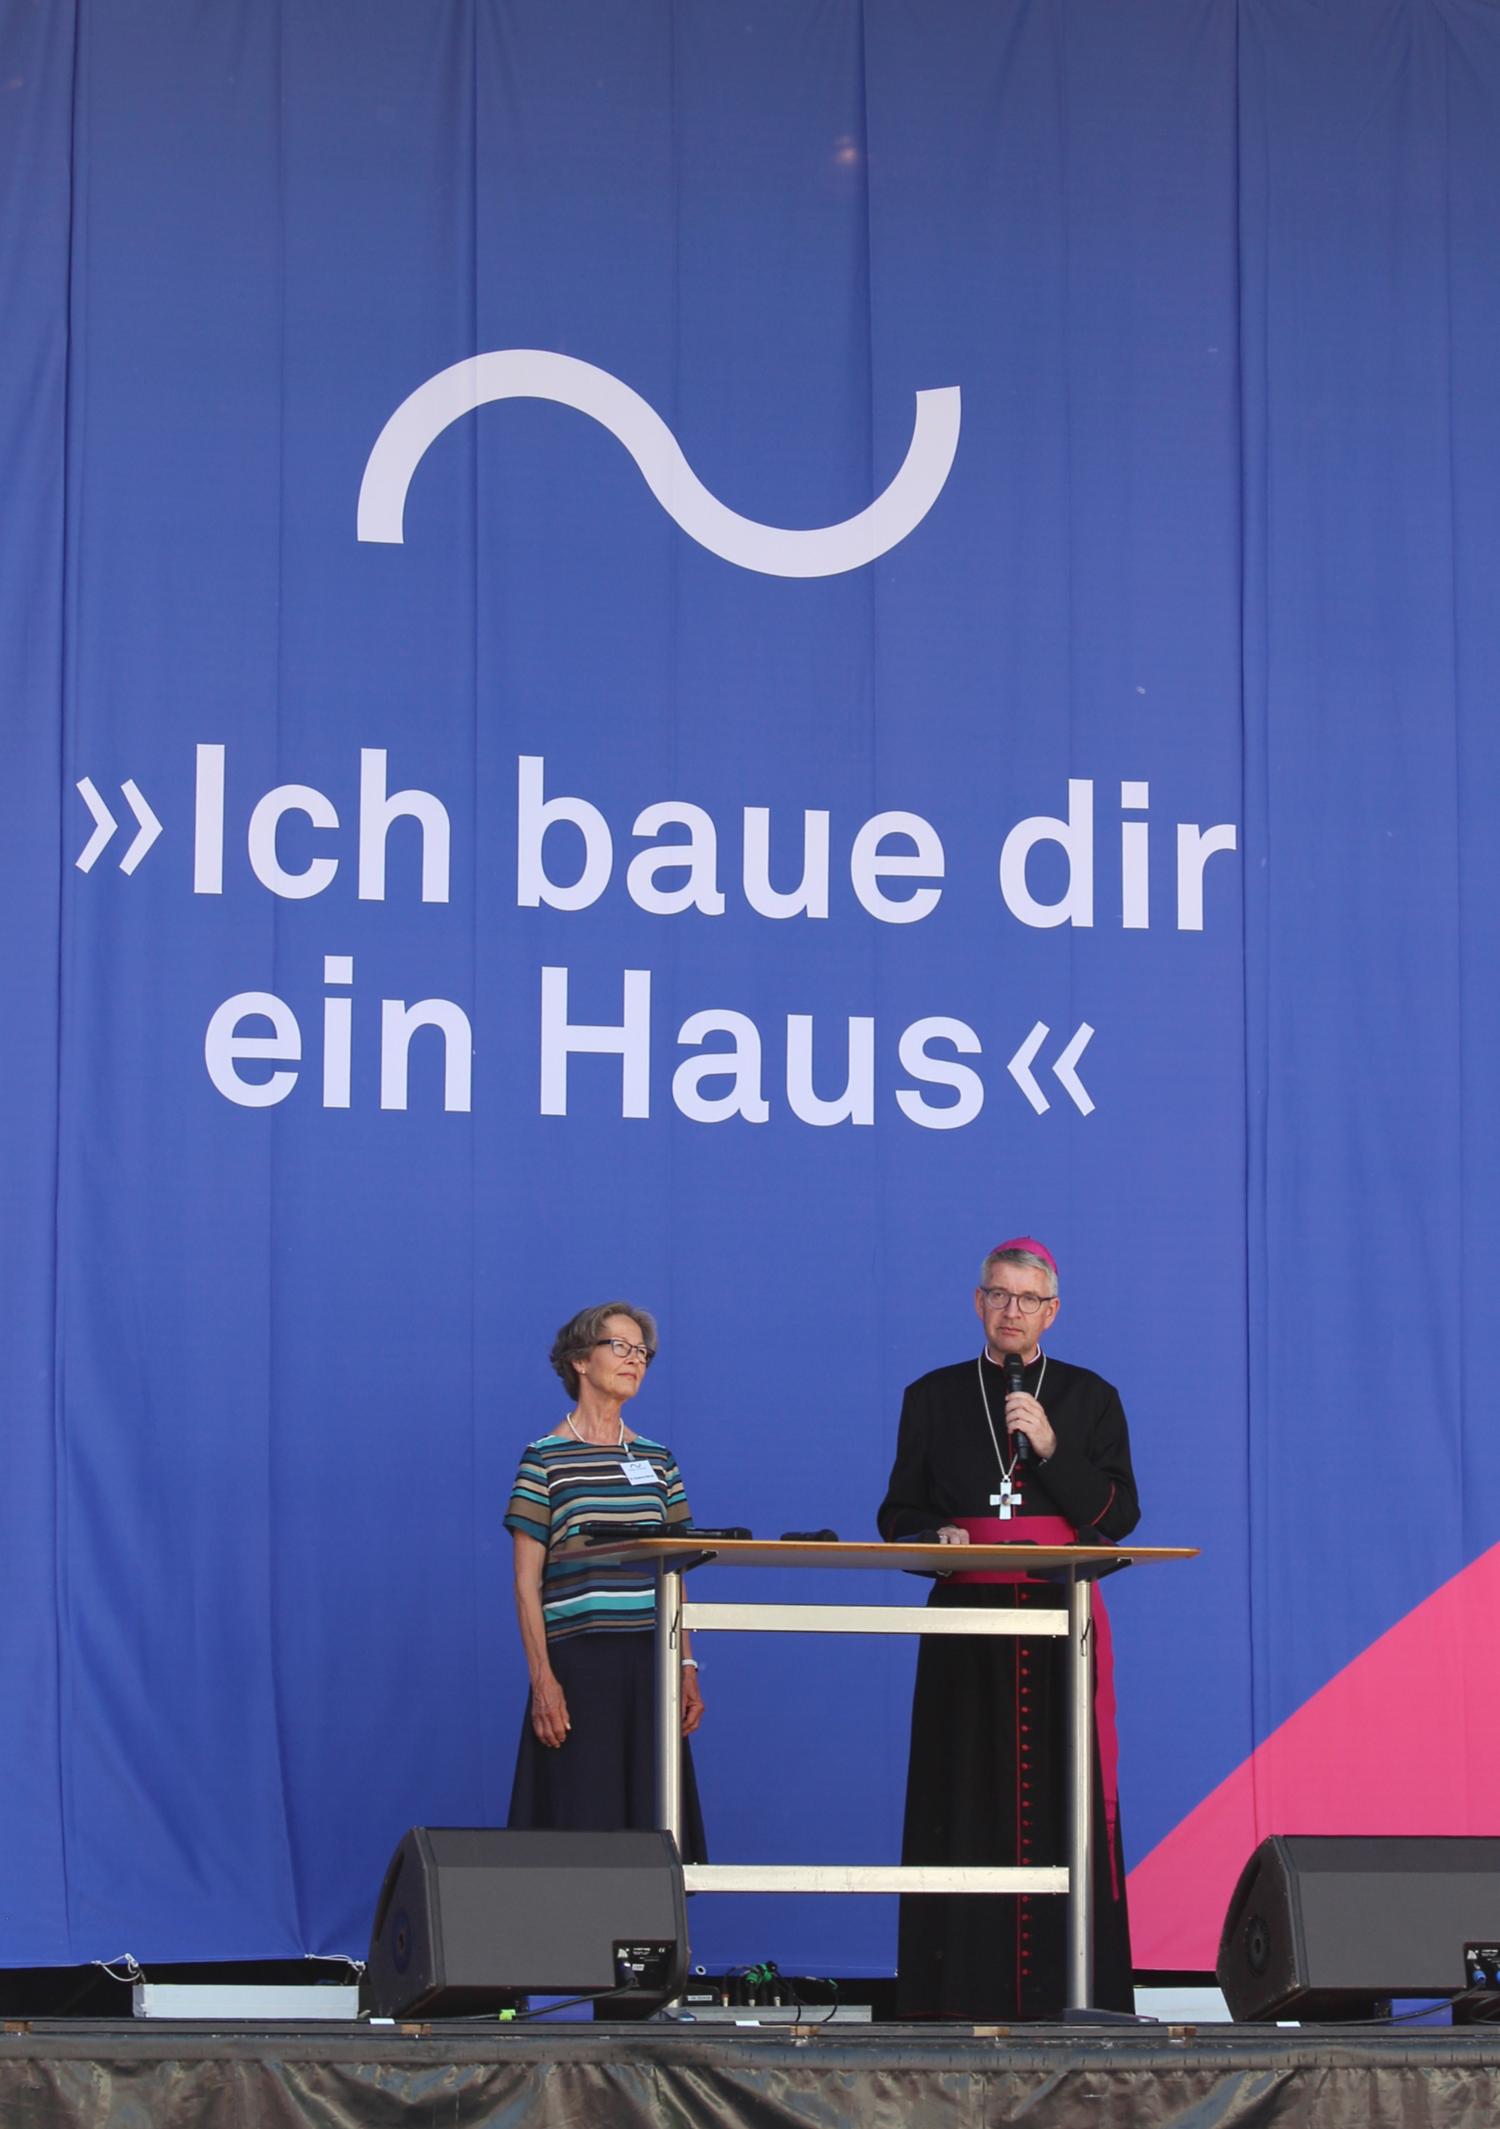 Mainz, 12. Juni 2022: Die Begrüßung beim Richtfest hatten Dr. Susanne Barner und Bischof Peter Kohlgraf übernommen. (c) Bistum Mainz / Blum